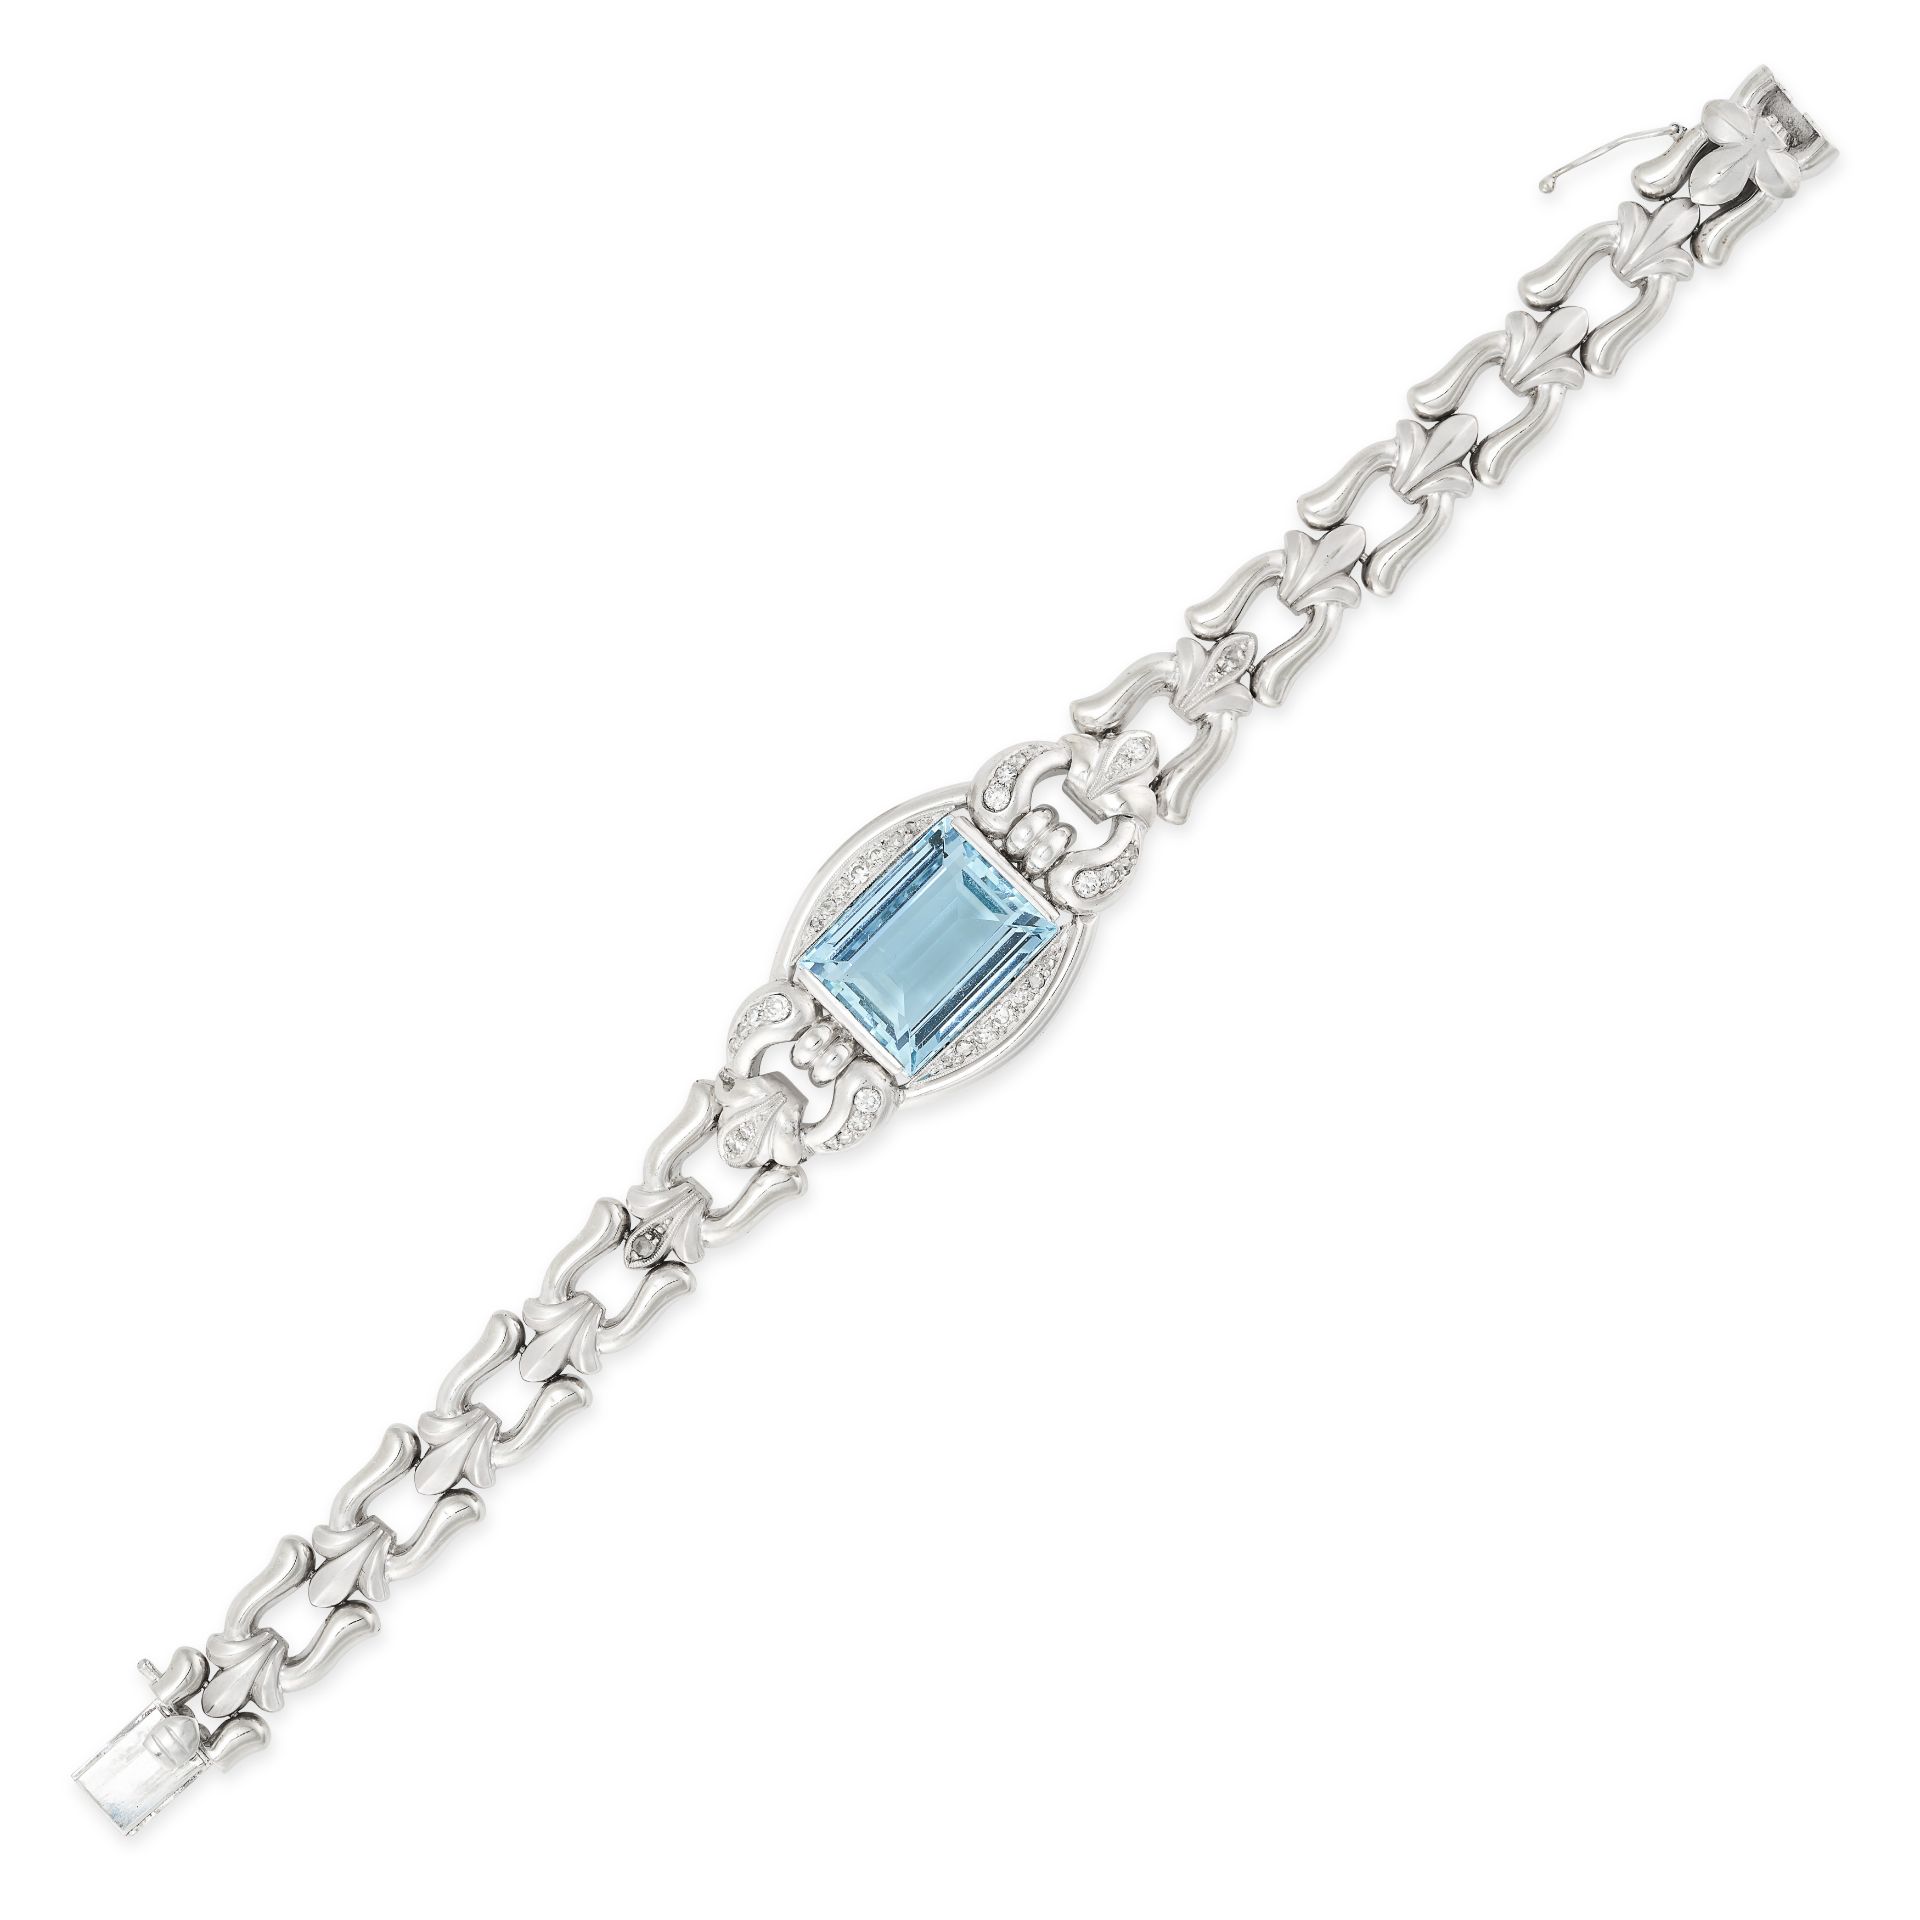 AN AQUAMARINE AND DIAMOND BRACELET set with a rectangular step cut aquamarine of 10.60 carats,